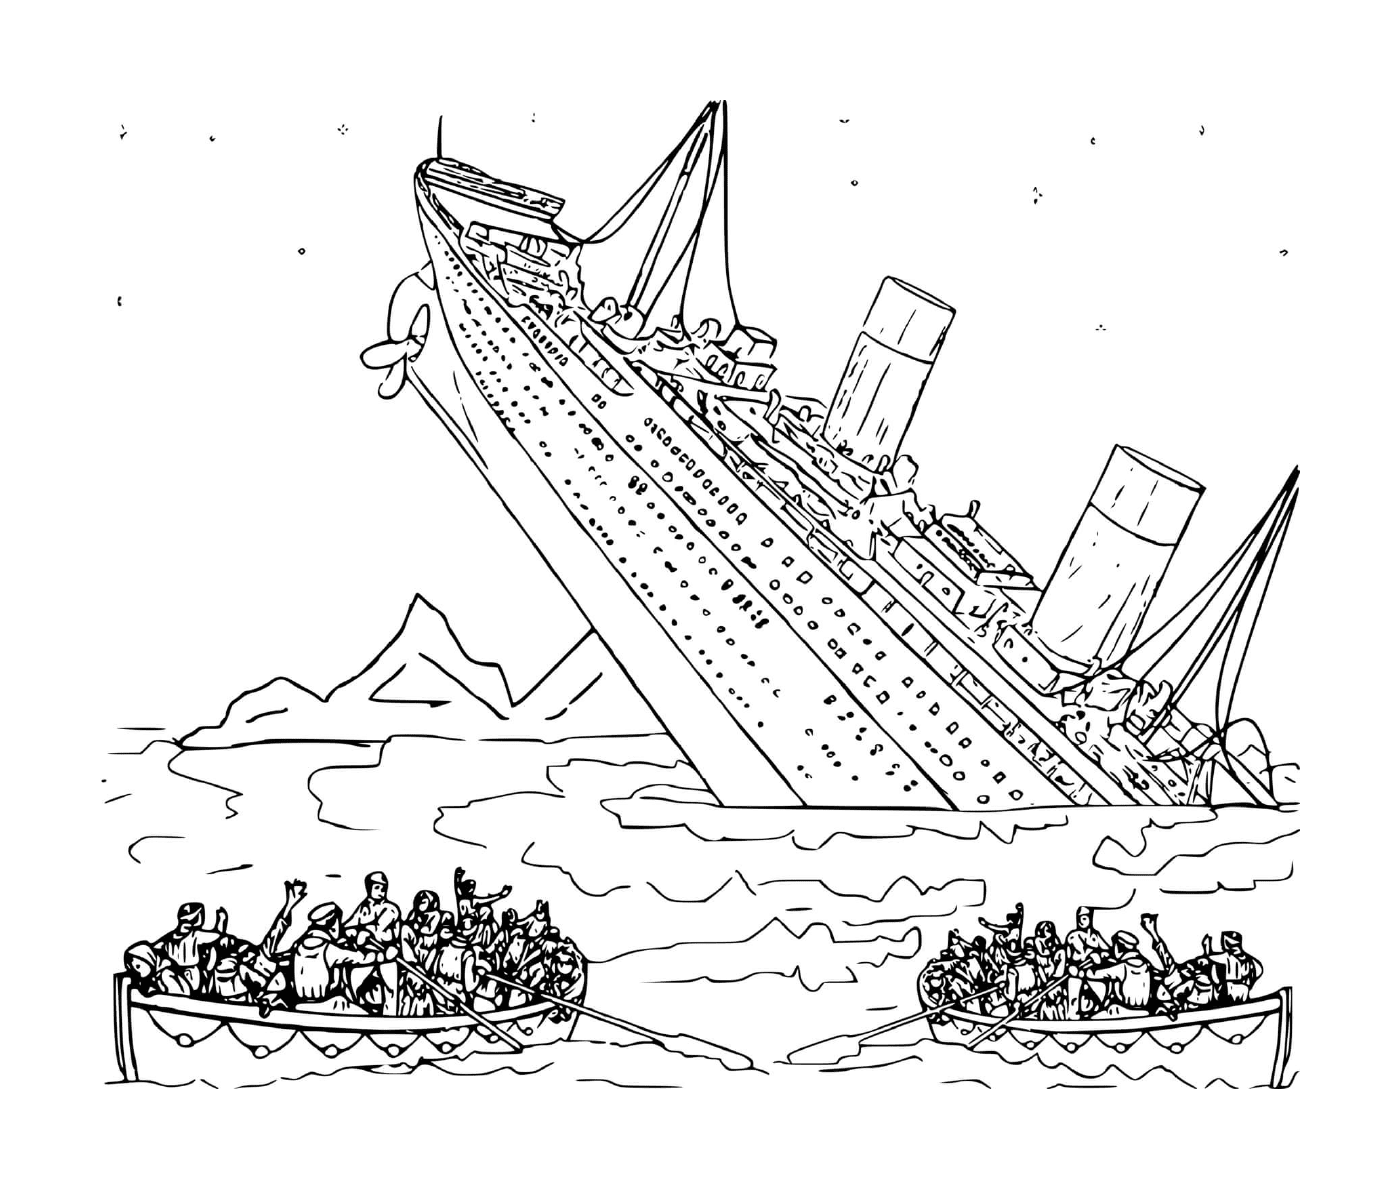   Un bateau dans l'eau avec des personnes à bord 